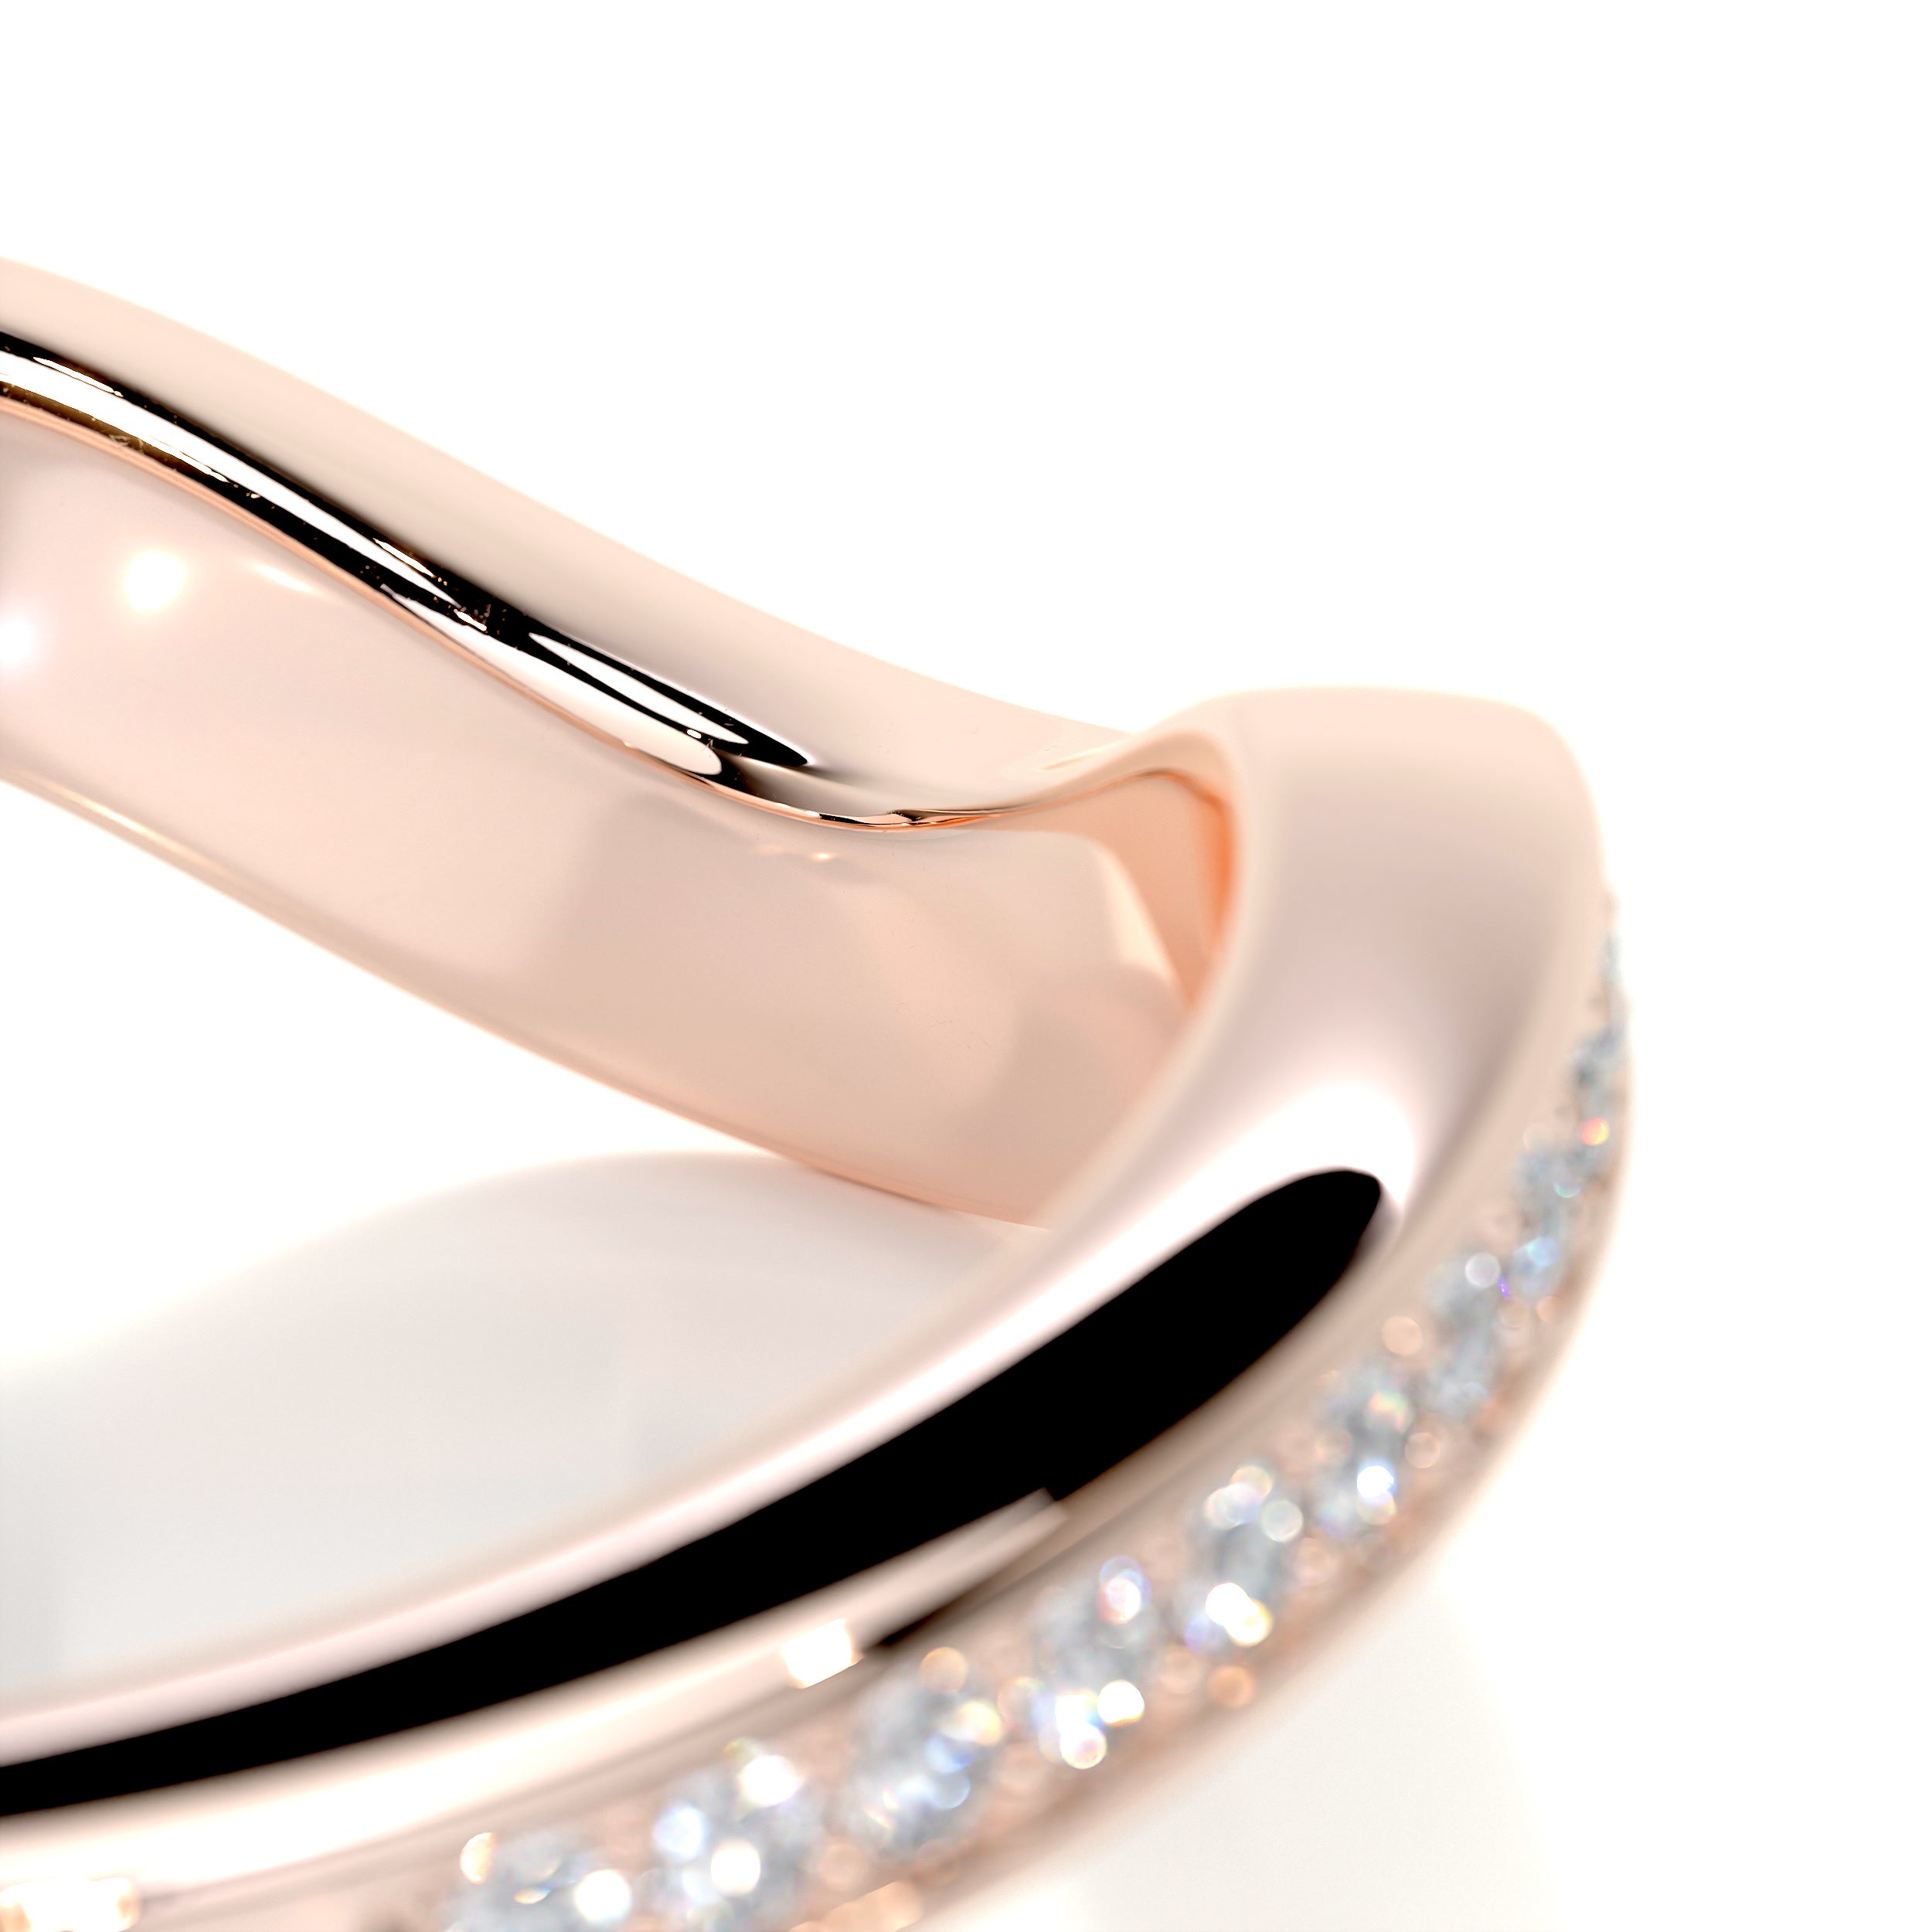 Lucy Diamond Wedding Ring   (0.30 Carat) -14K Rose Gold